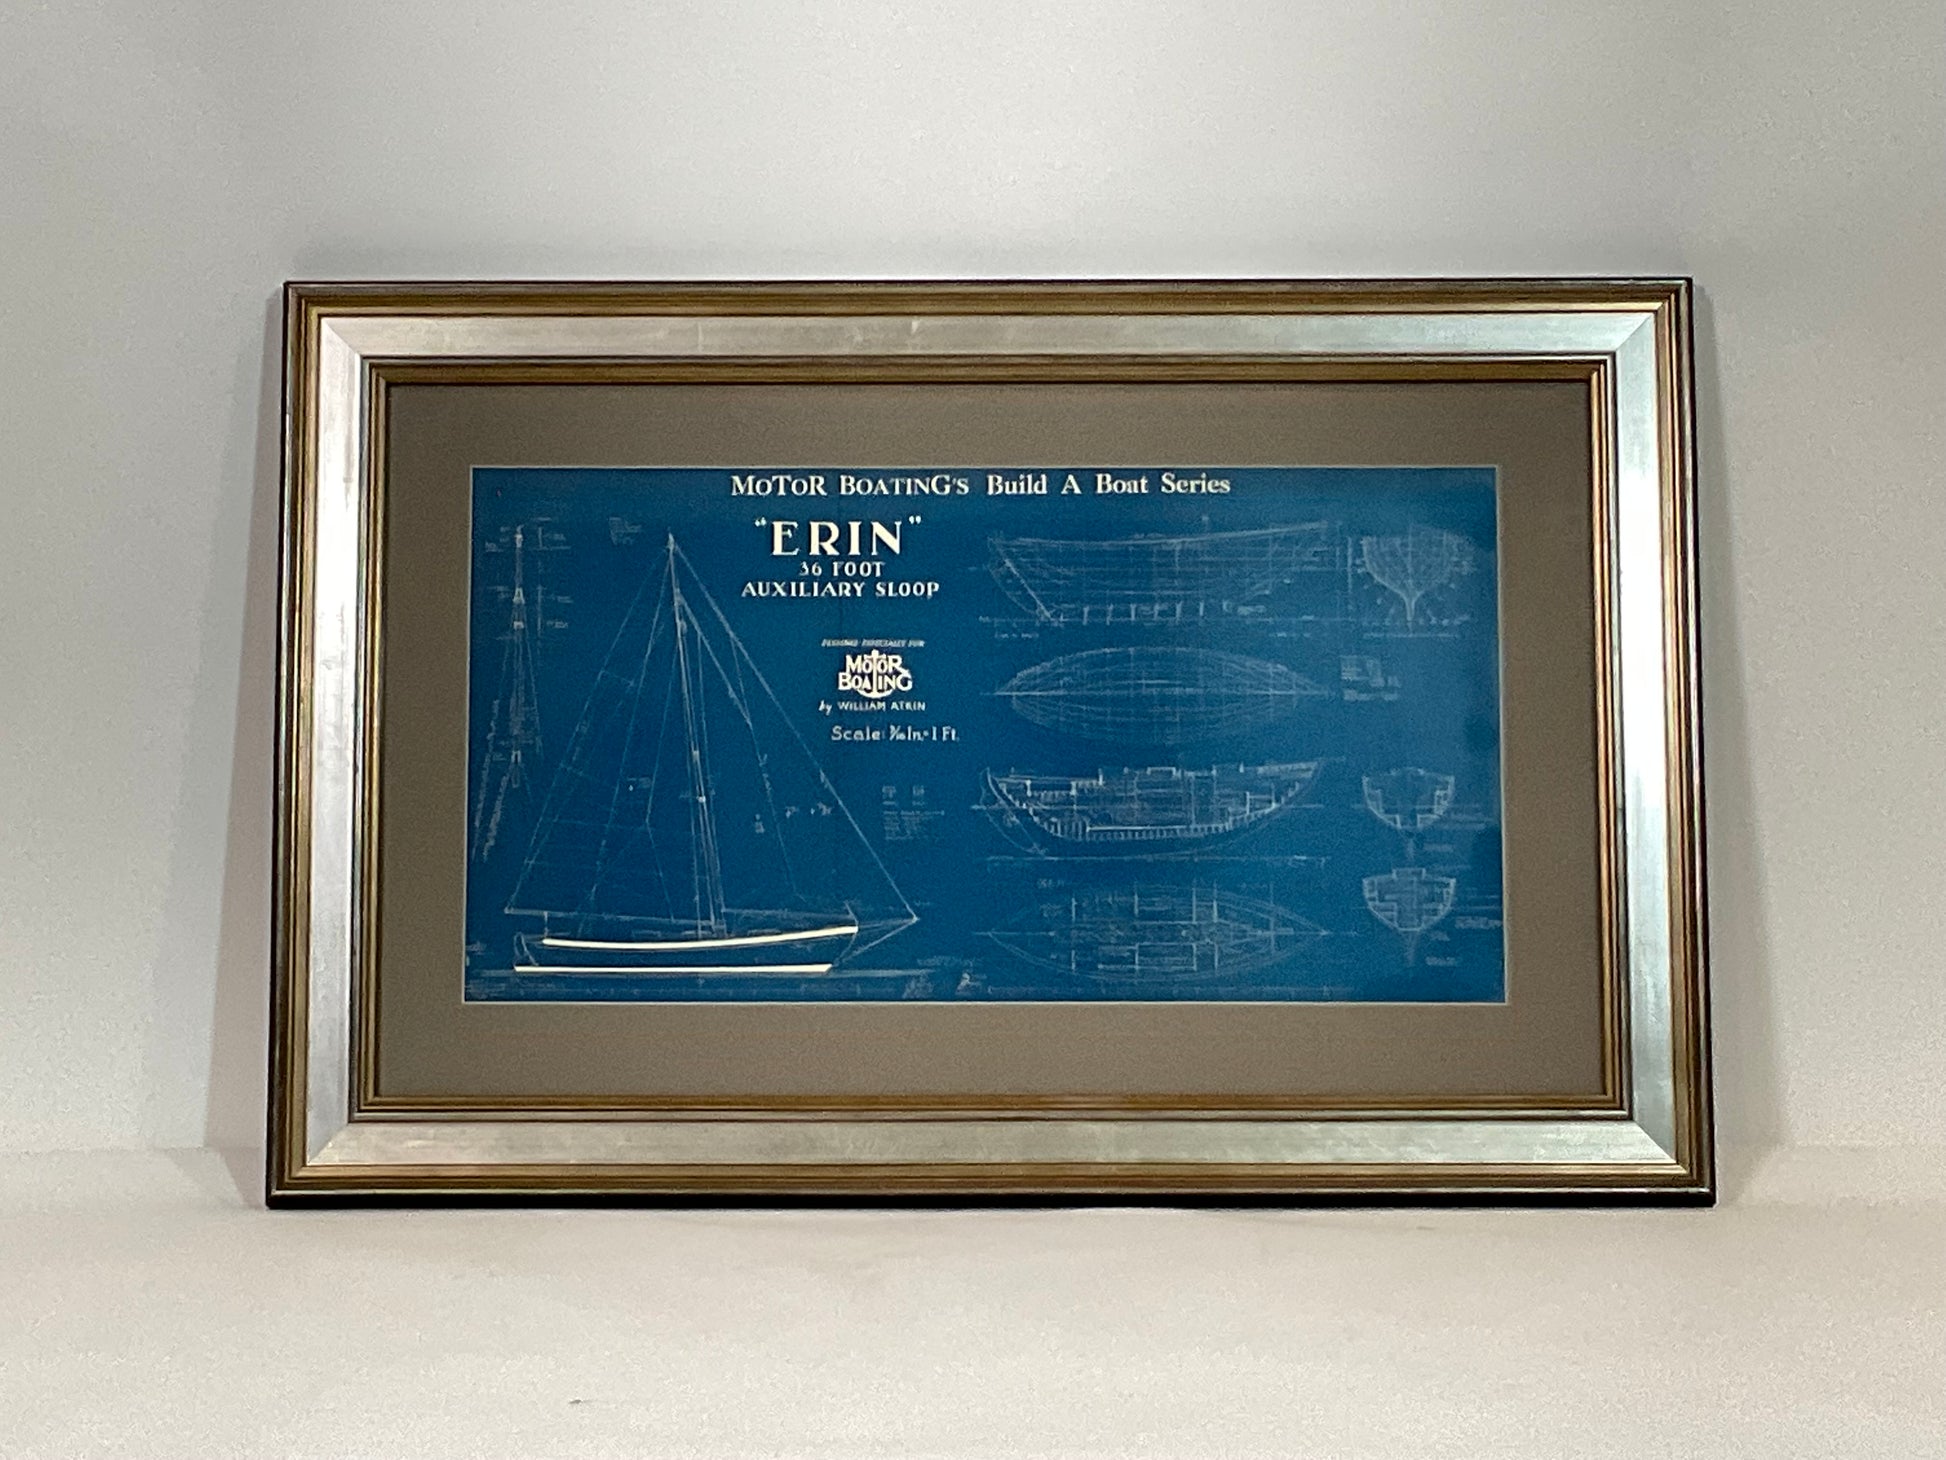 Boat Blueprint of the Sloop “ERIN” - Lannan Gallery